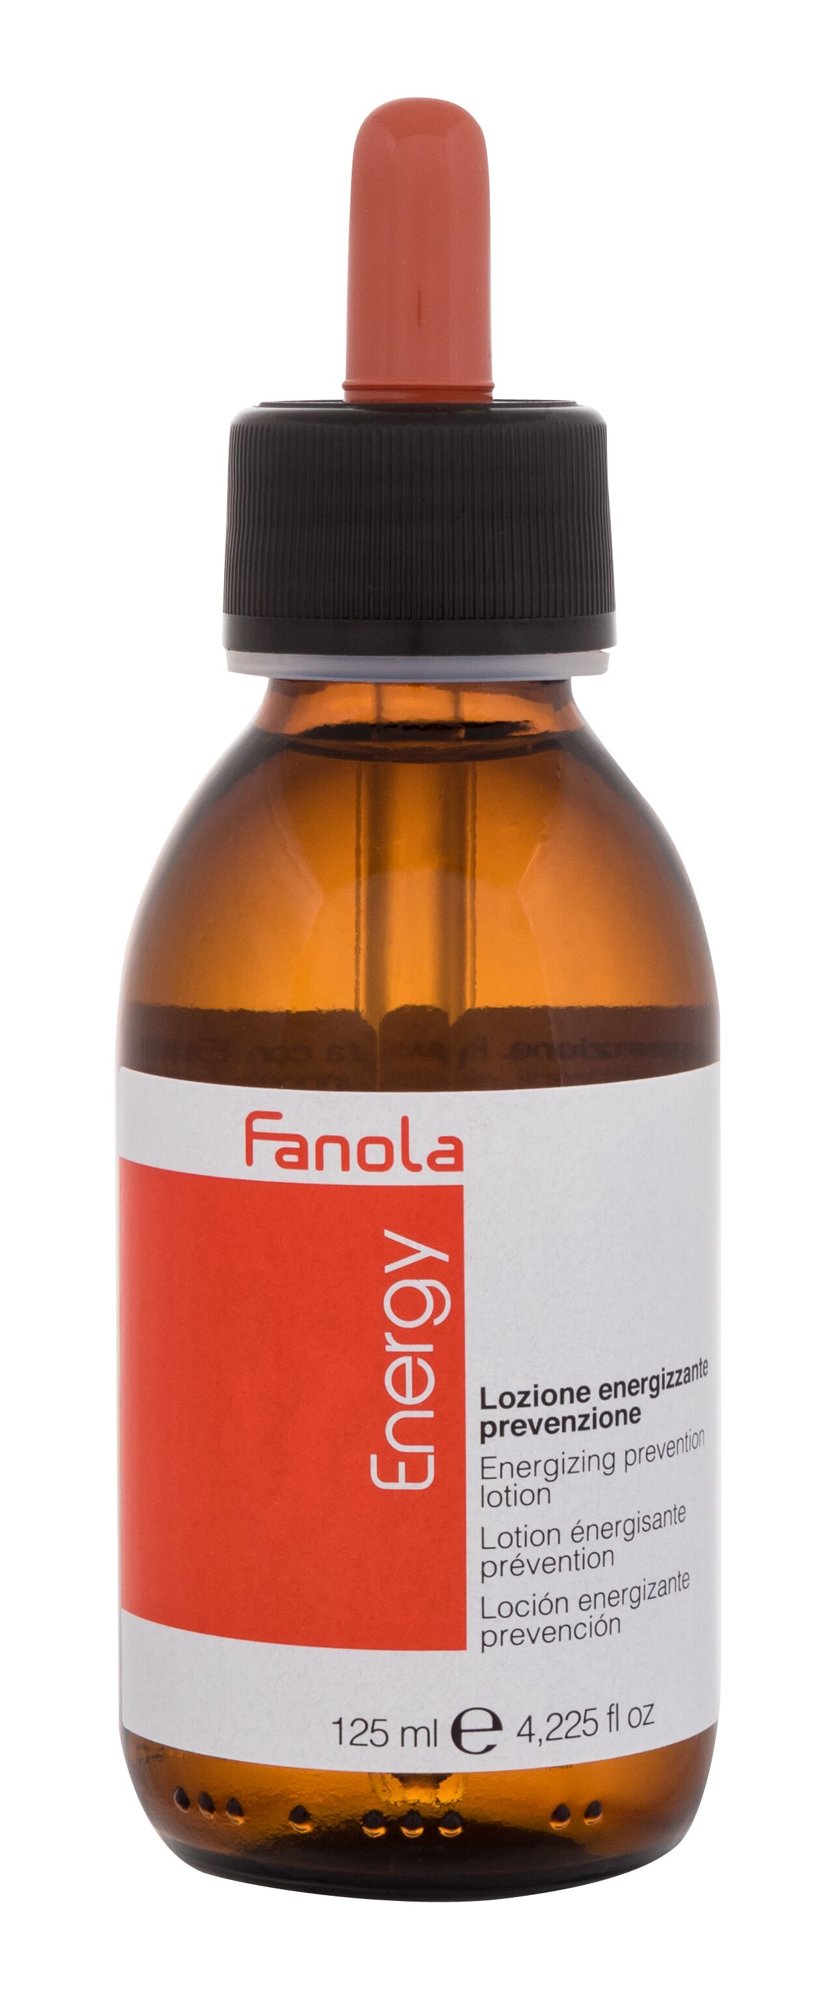 Fanola Energy Energizing Prevention Lotion priemonė nuo plaukų slinkimo